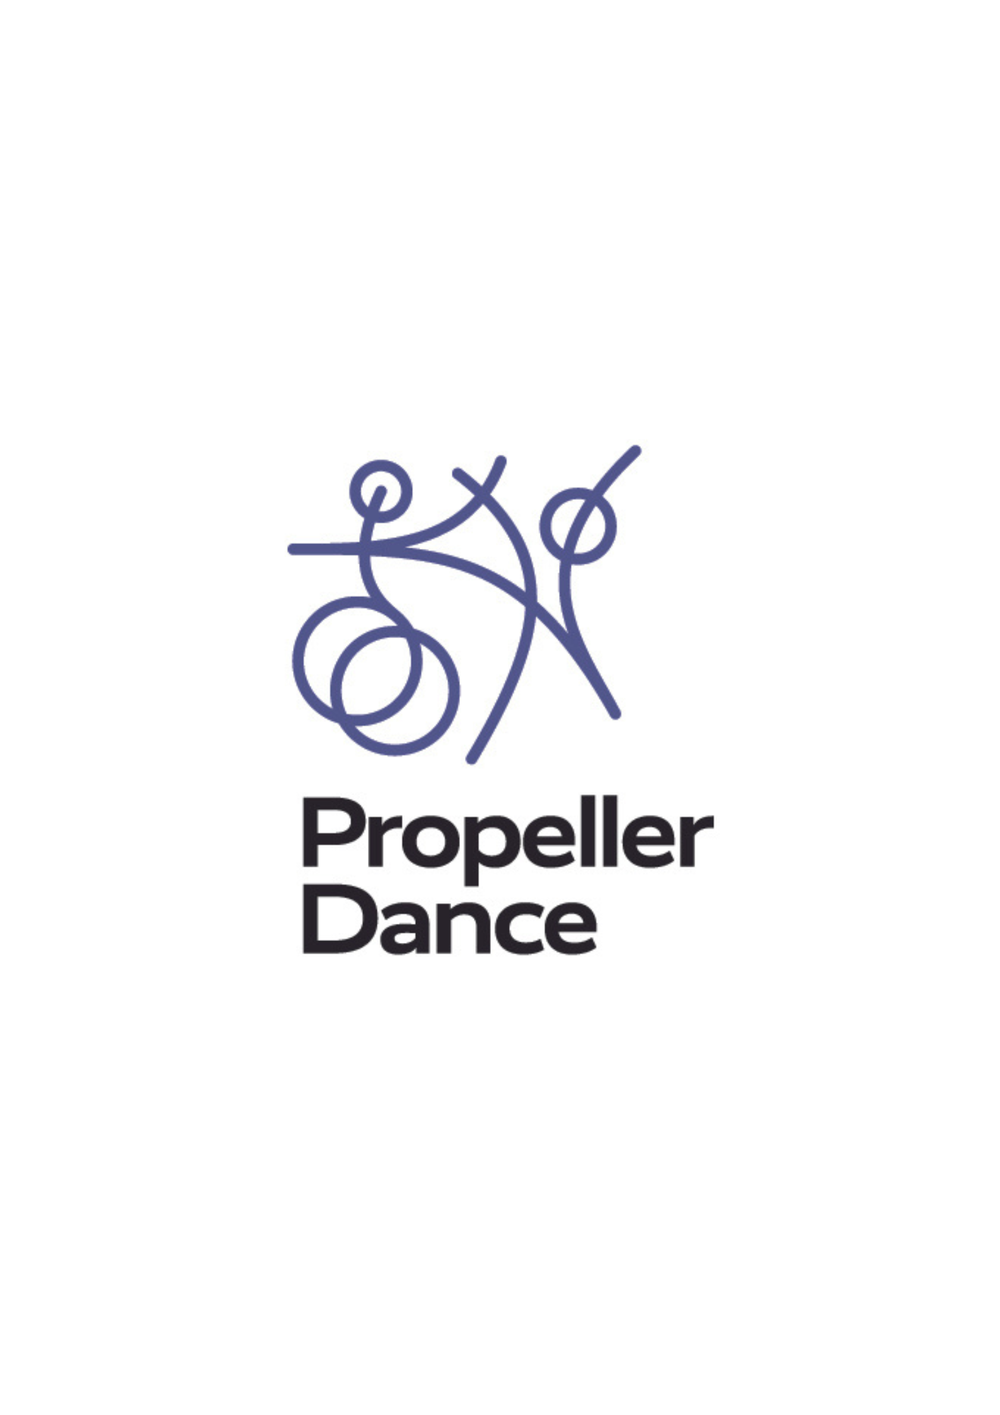 Propeller Dance's logo.